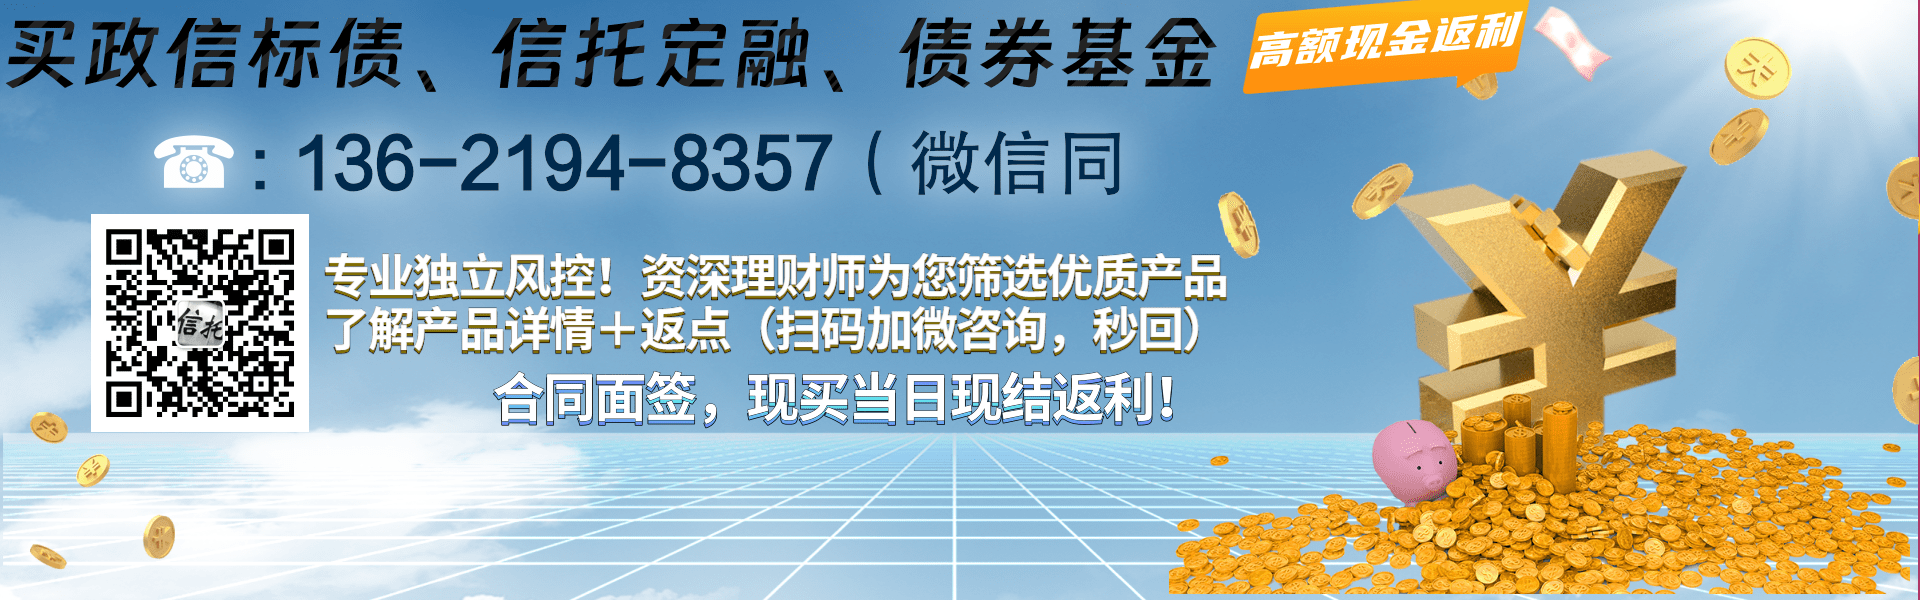 重庆鸿业实业债权资产项目12个月